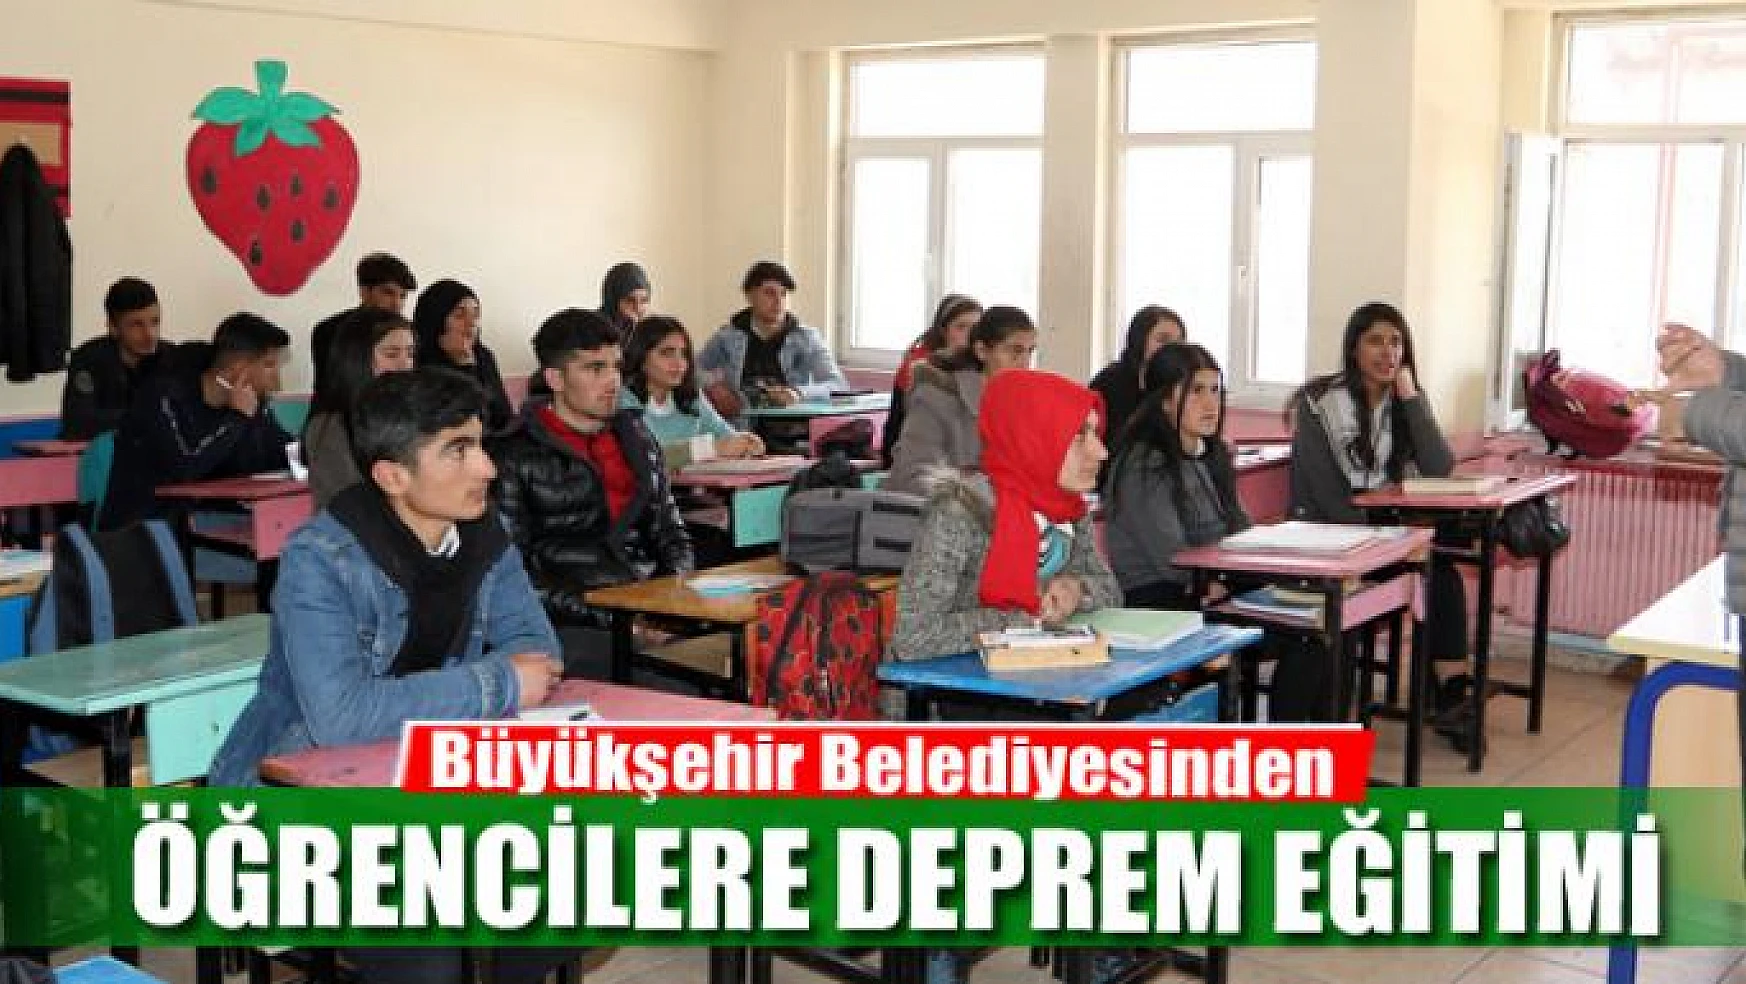 Büyükşehir Belediyesinden öğrencilere deprem eğitimi